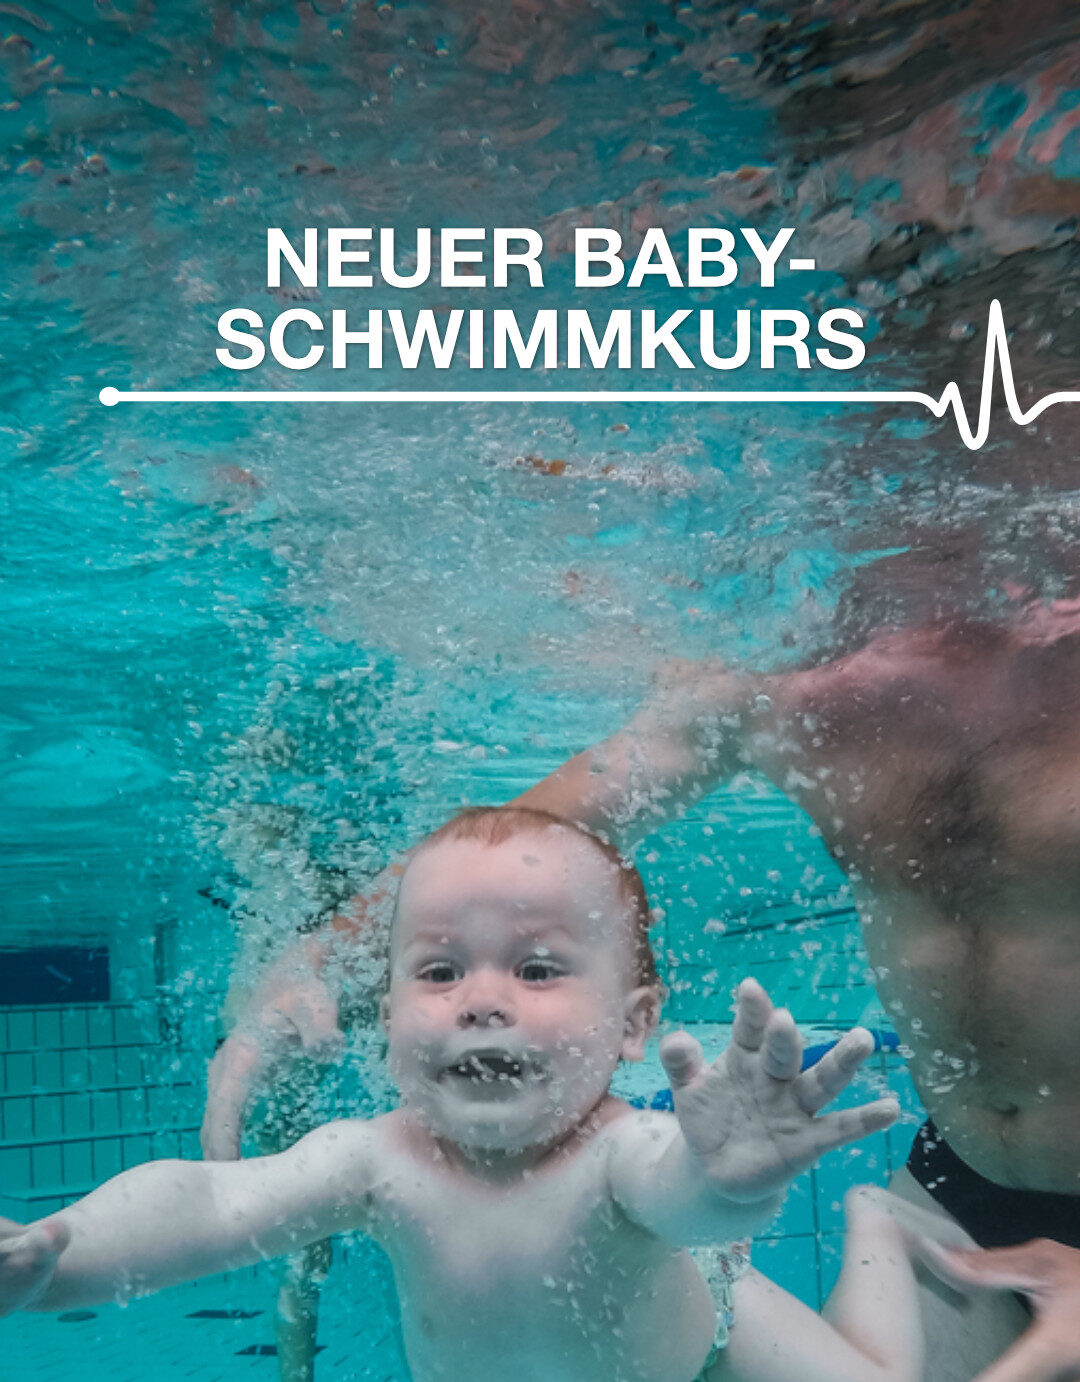 Neuer Babyschwimmkur im Januar 2022